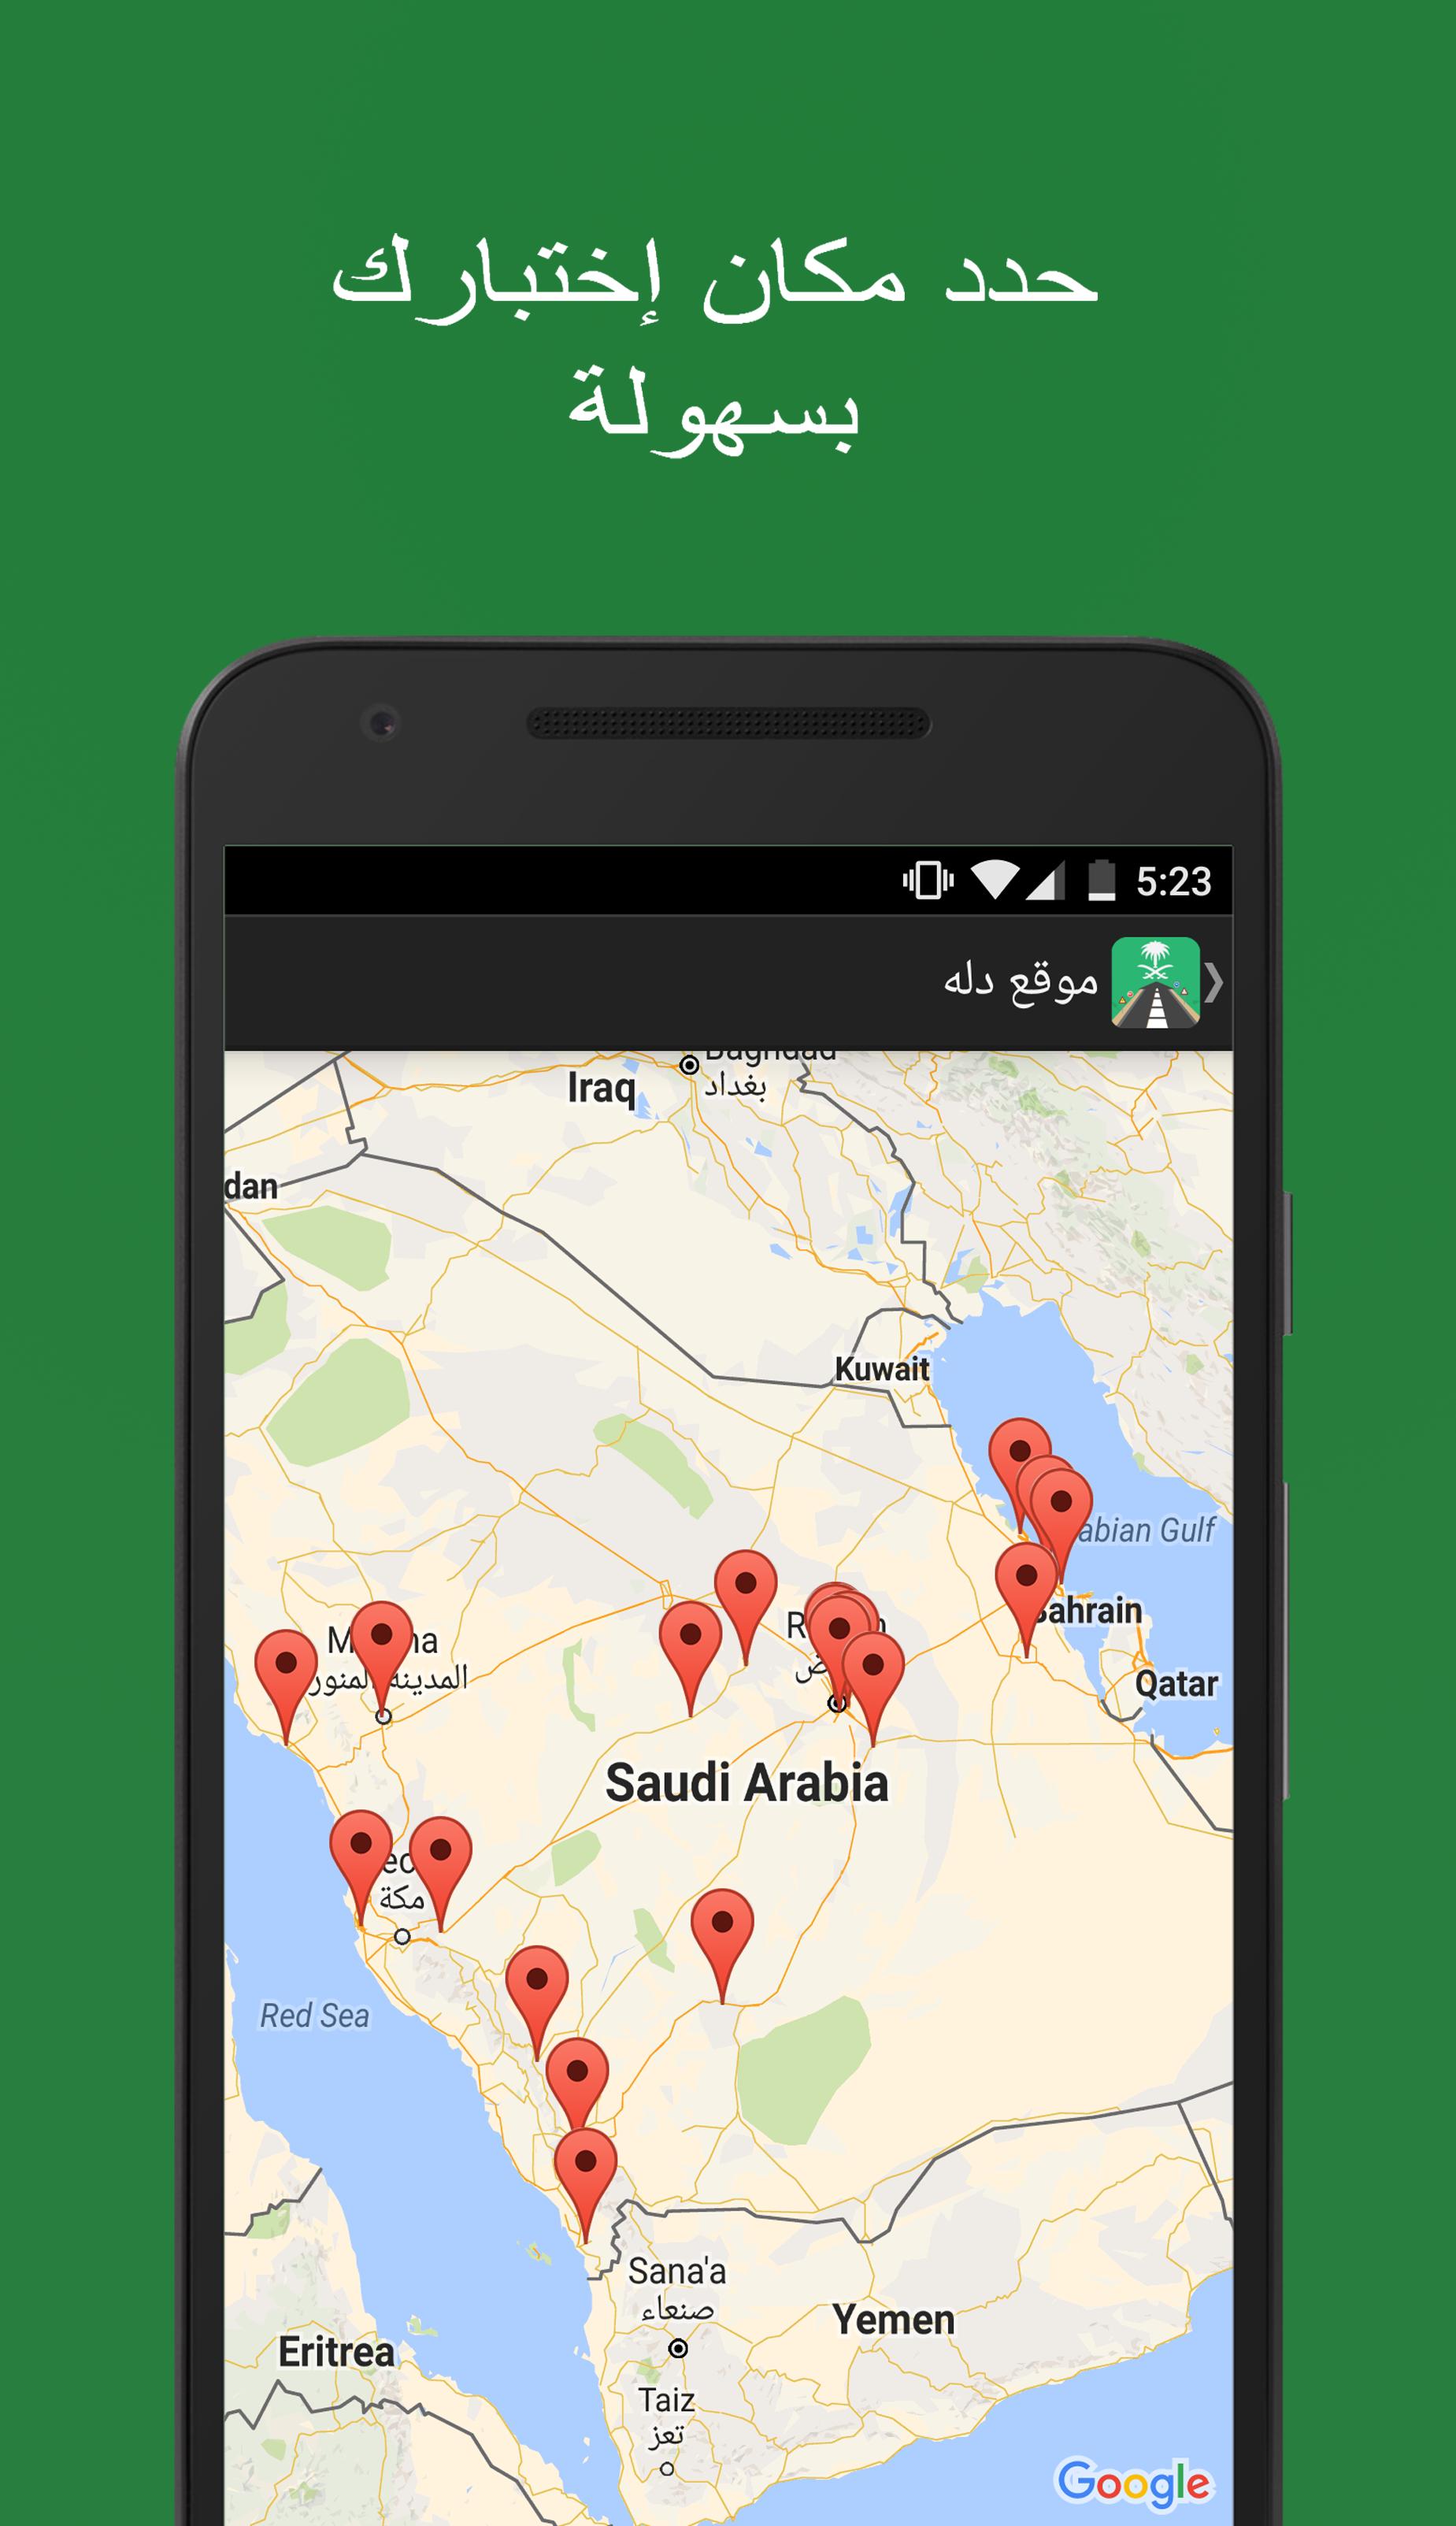 إختبار مدرسة القيادةرخصةالقيادة السعودية for Android APK Download